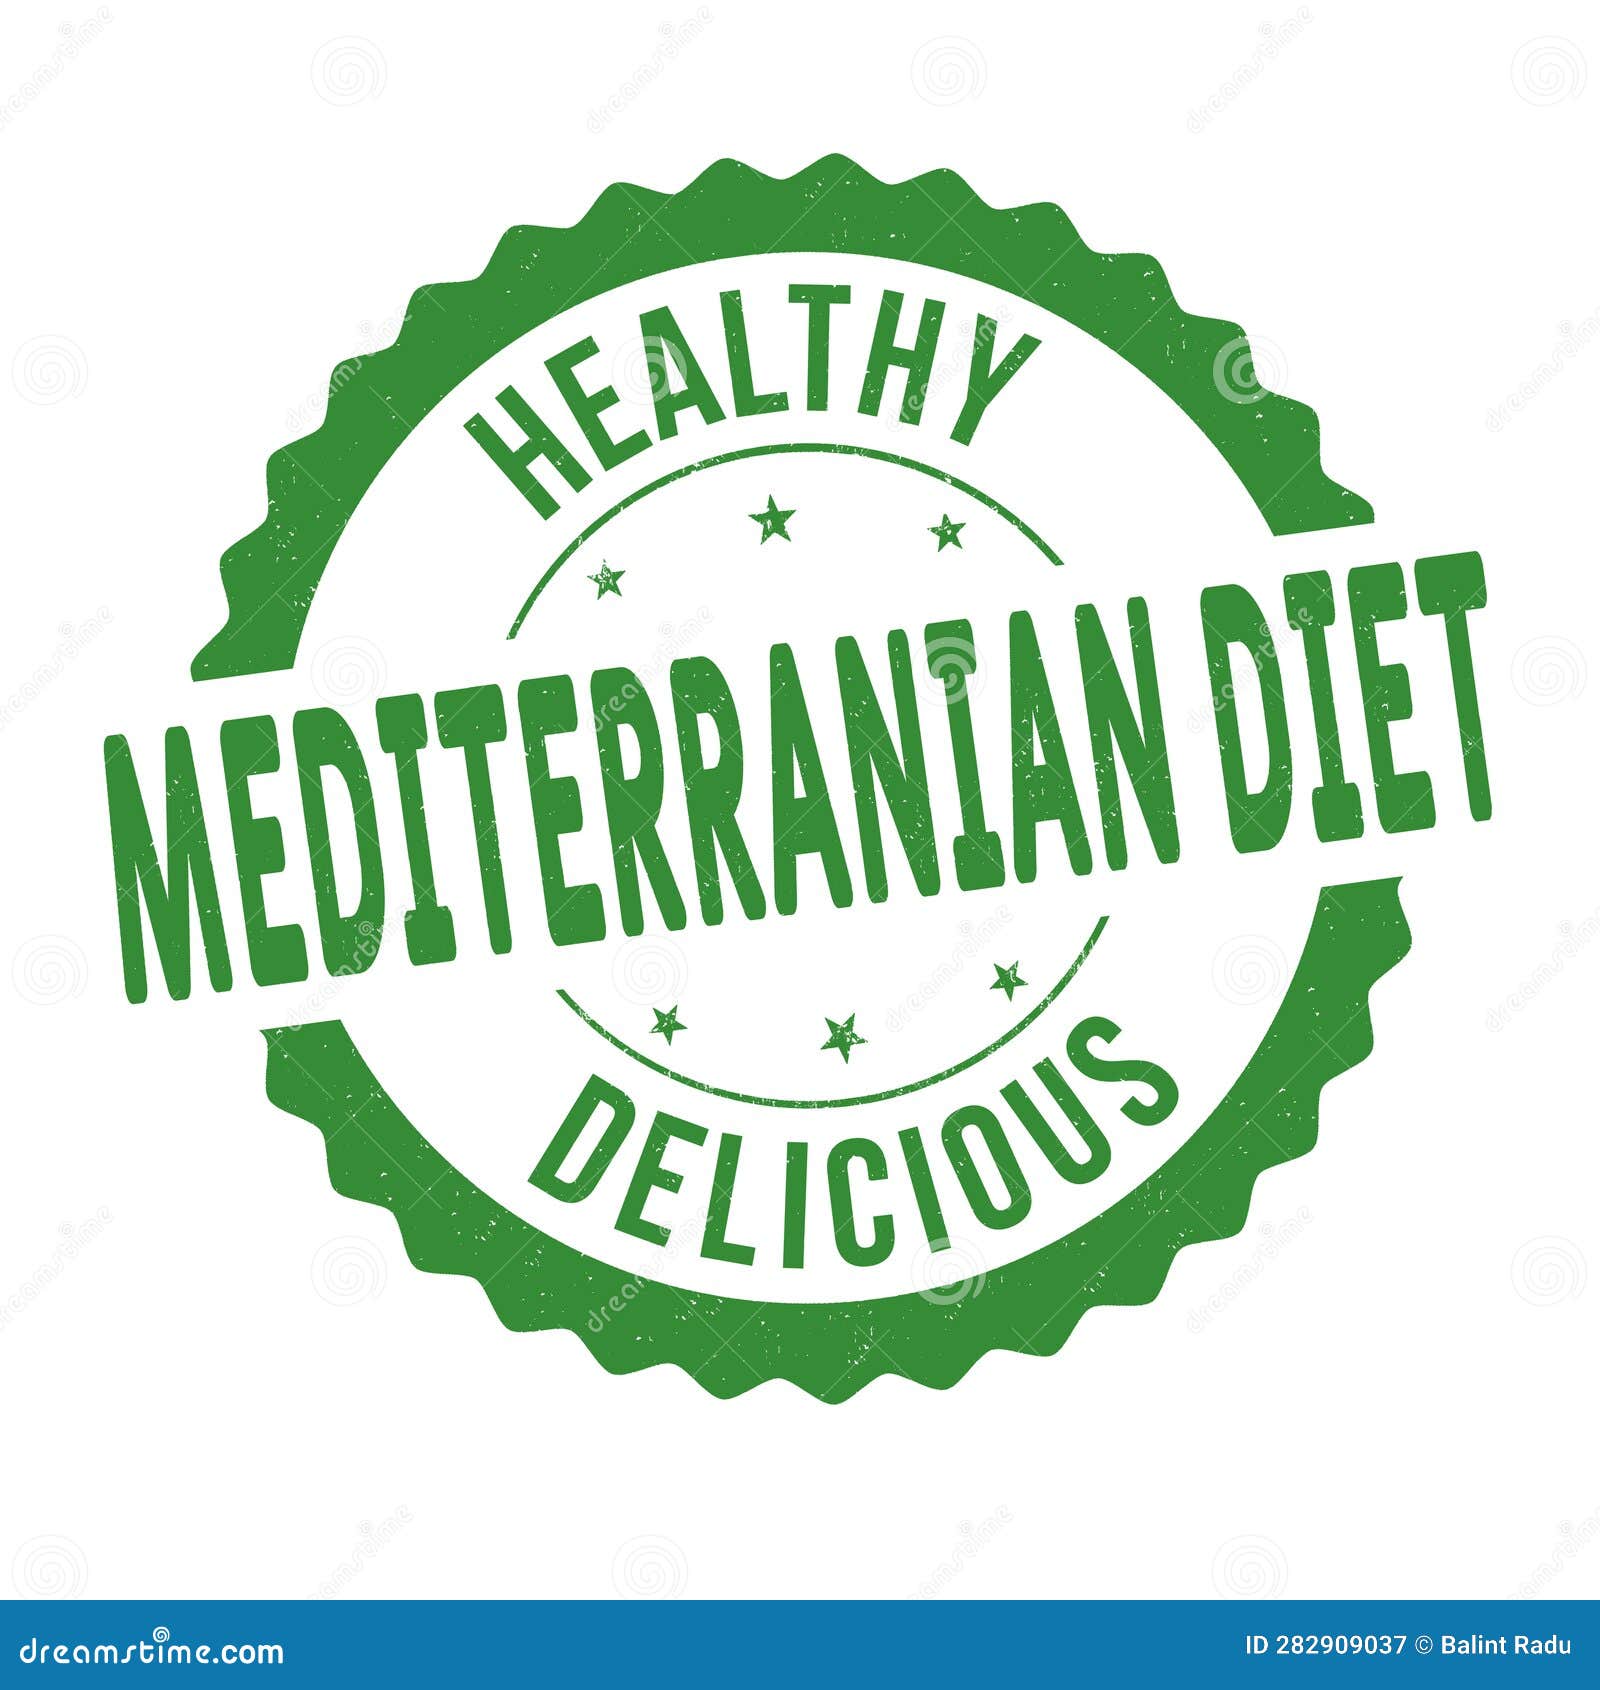 mediterranian diet grunge rubber stamp